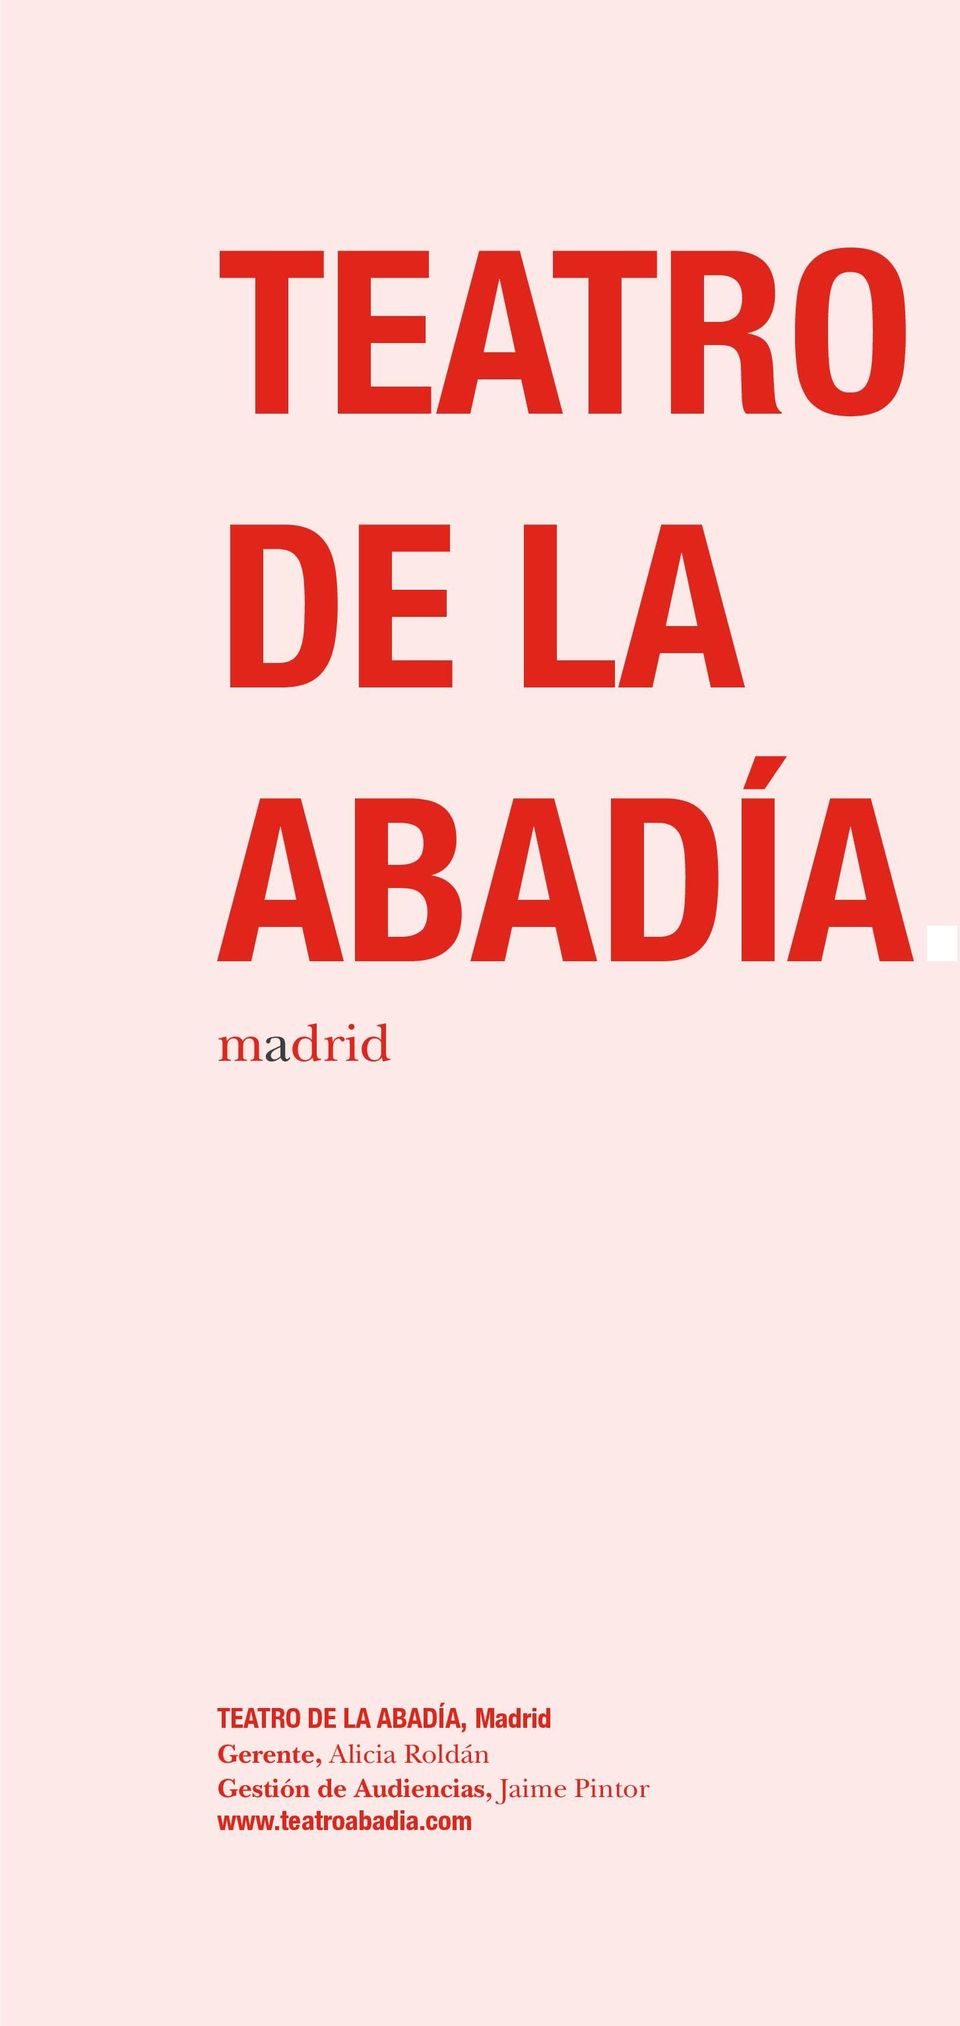 Madrid Gerente, Alicia Roldán